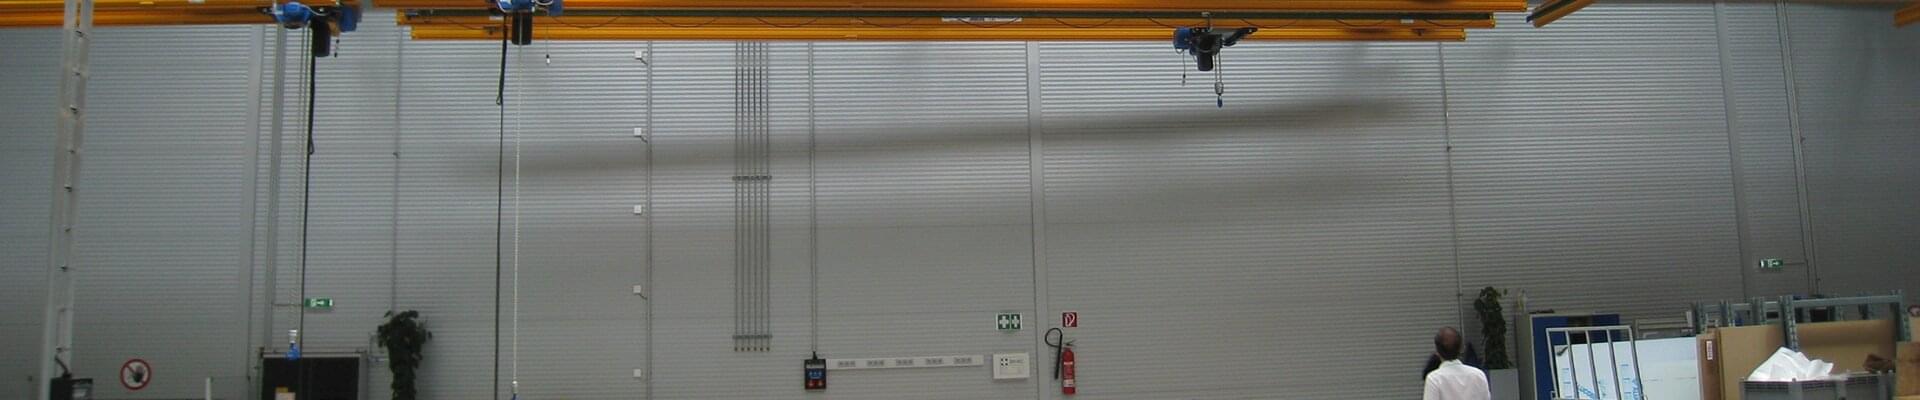 ABUS hängande transportsystem i en produktionshall för aluminiumprofiler och kompositer i Österrike 